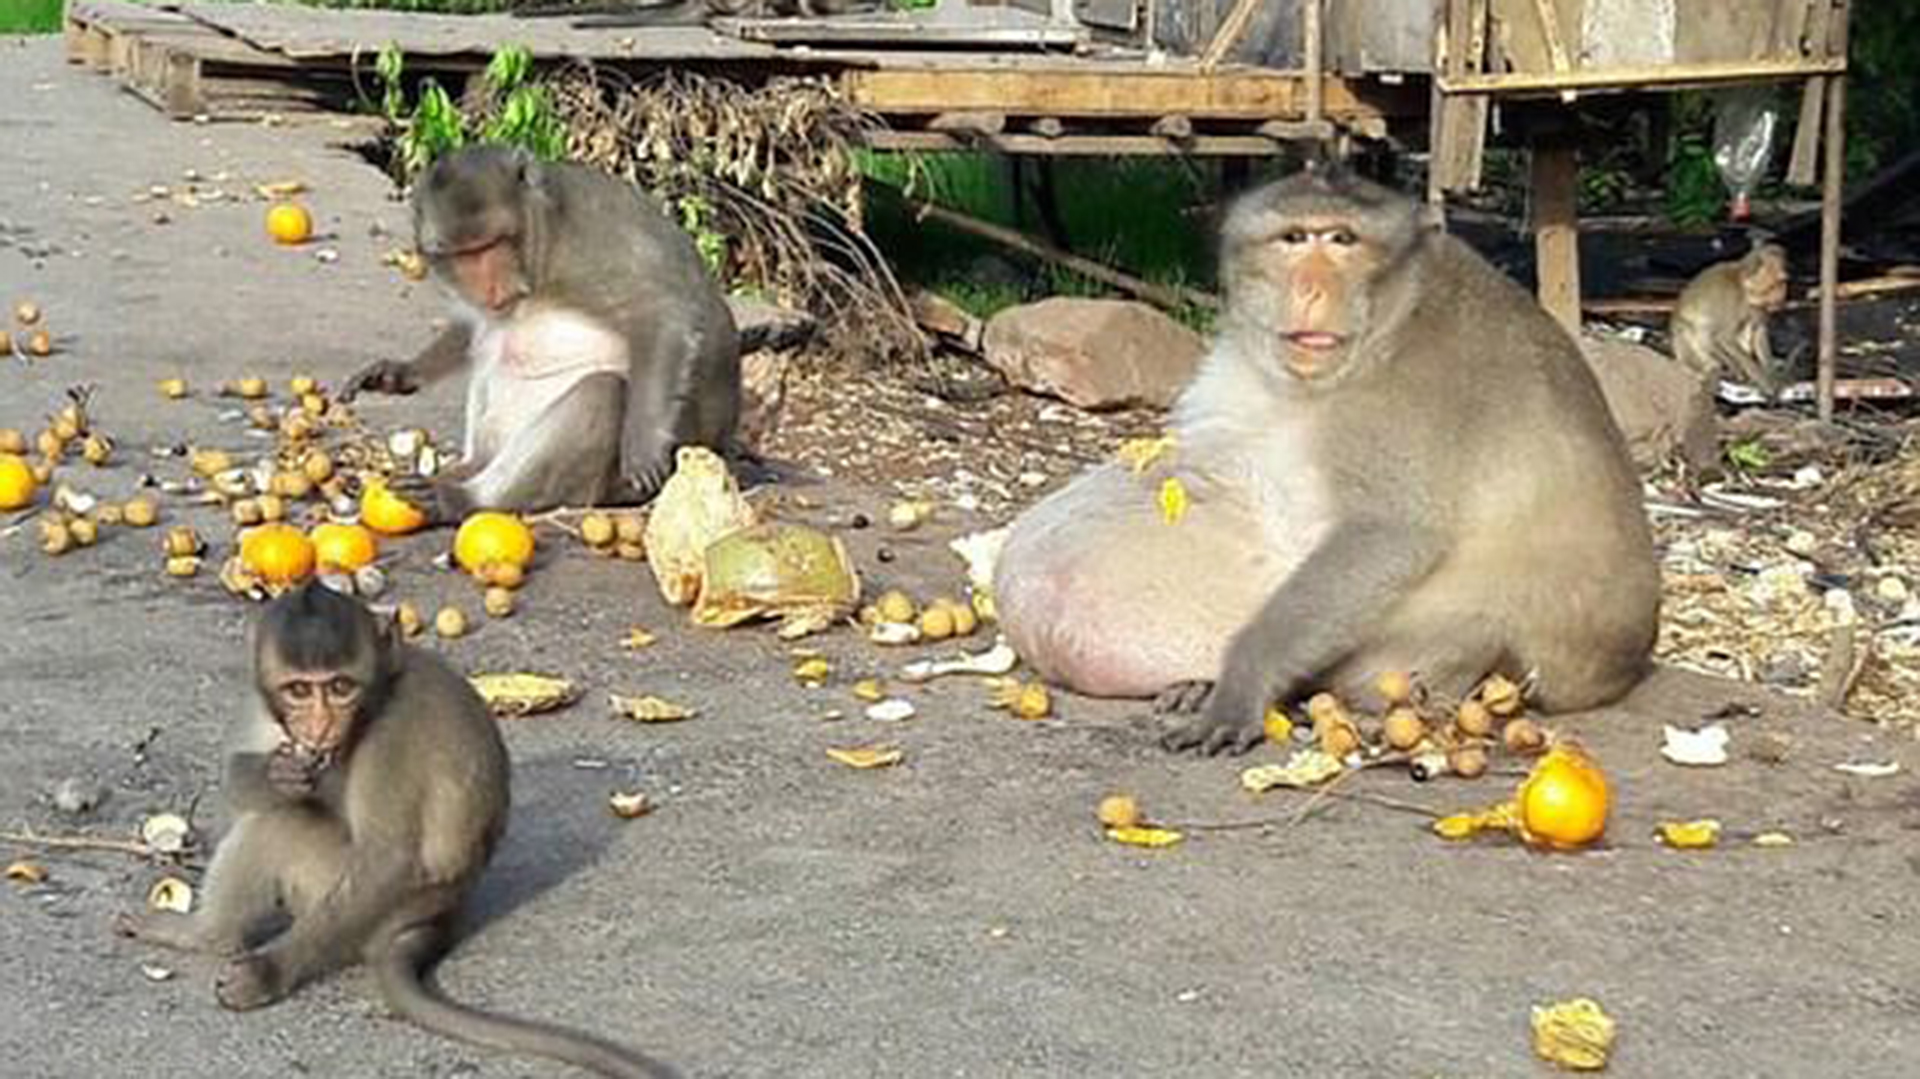 Tío Gordo, mono adicto a la comida basura